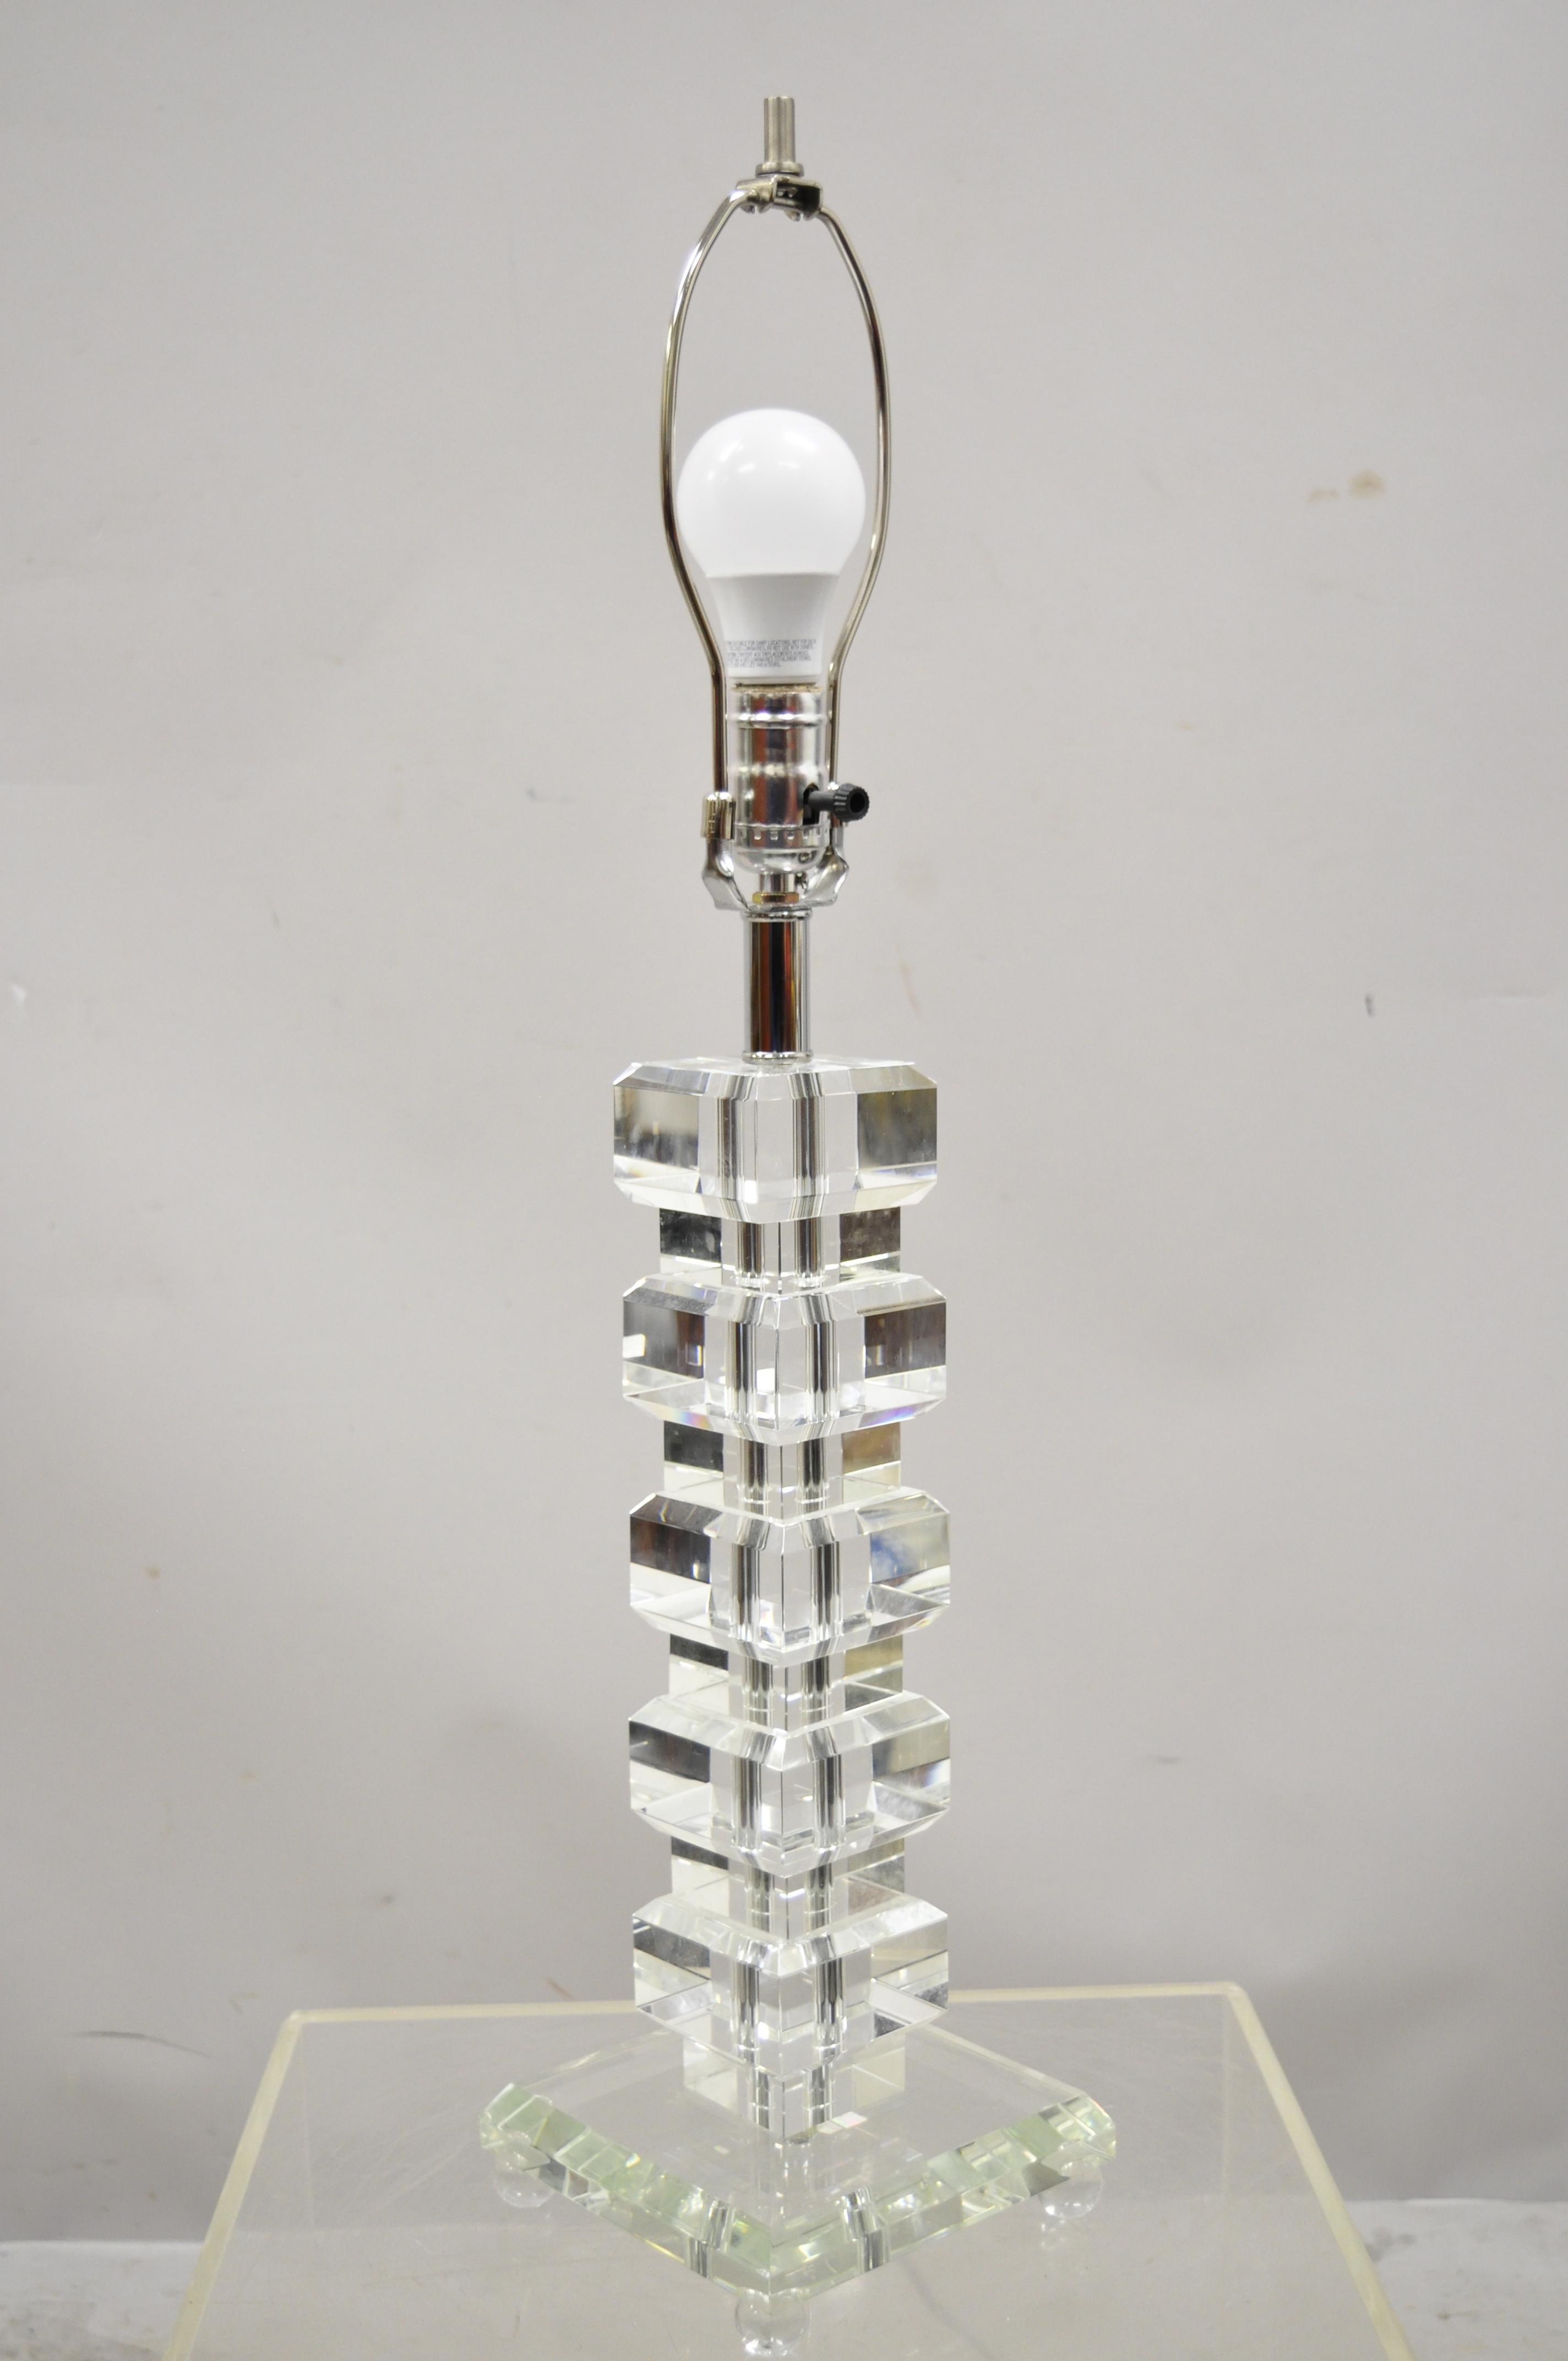 Lampe de table à colonne en forme de glaçon en acrylique Lucite empilé de style contemporain Mid-Century Modern avec abat-jour. Cet article est doté d'une quincaillerie chromée, d'une douille d'éclairage, de cubes en Lucite transparent, d'un style